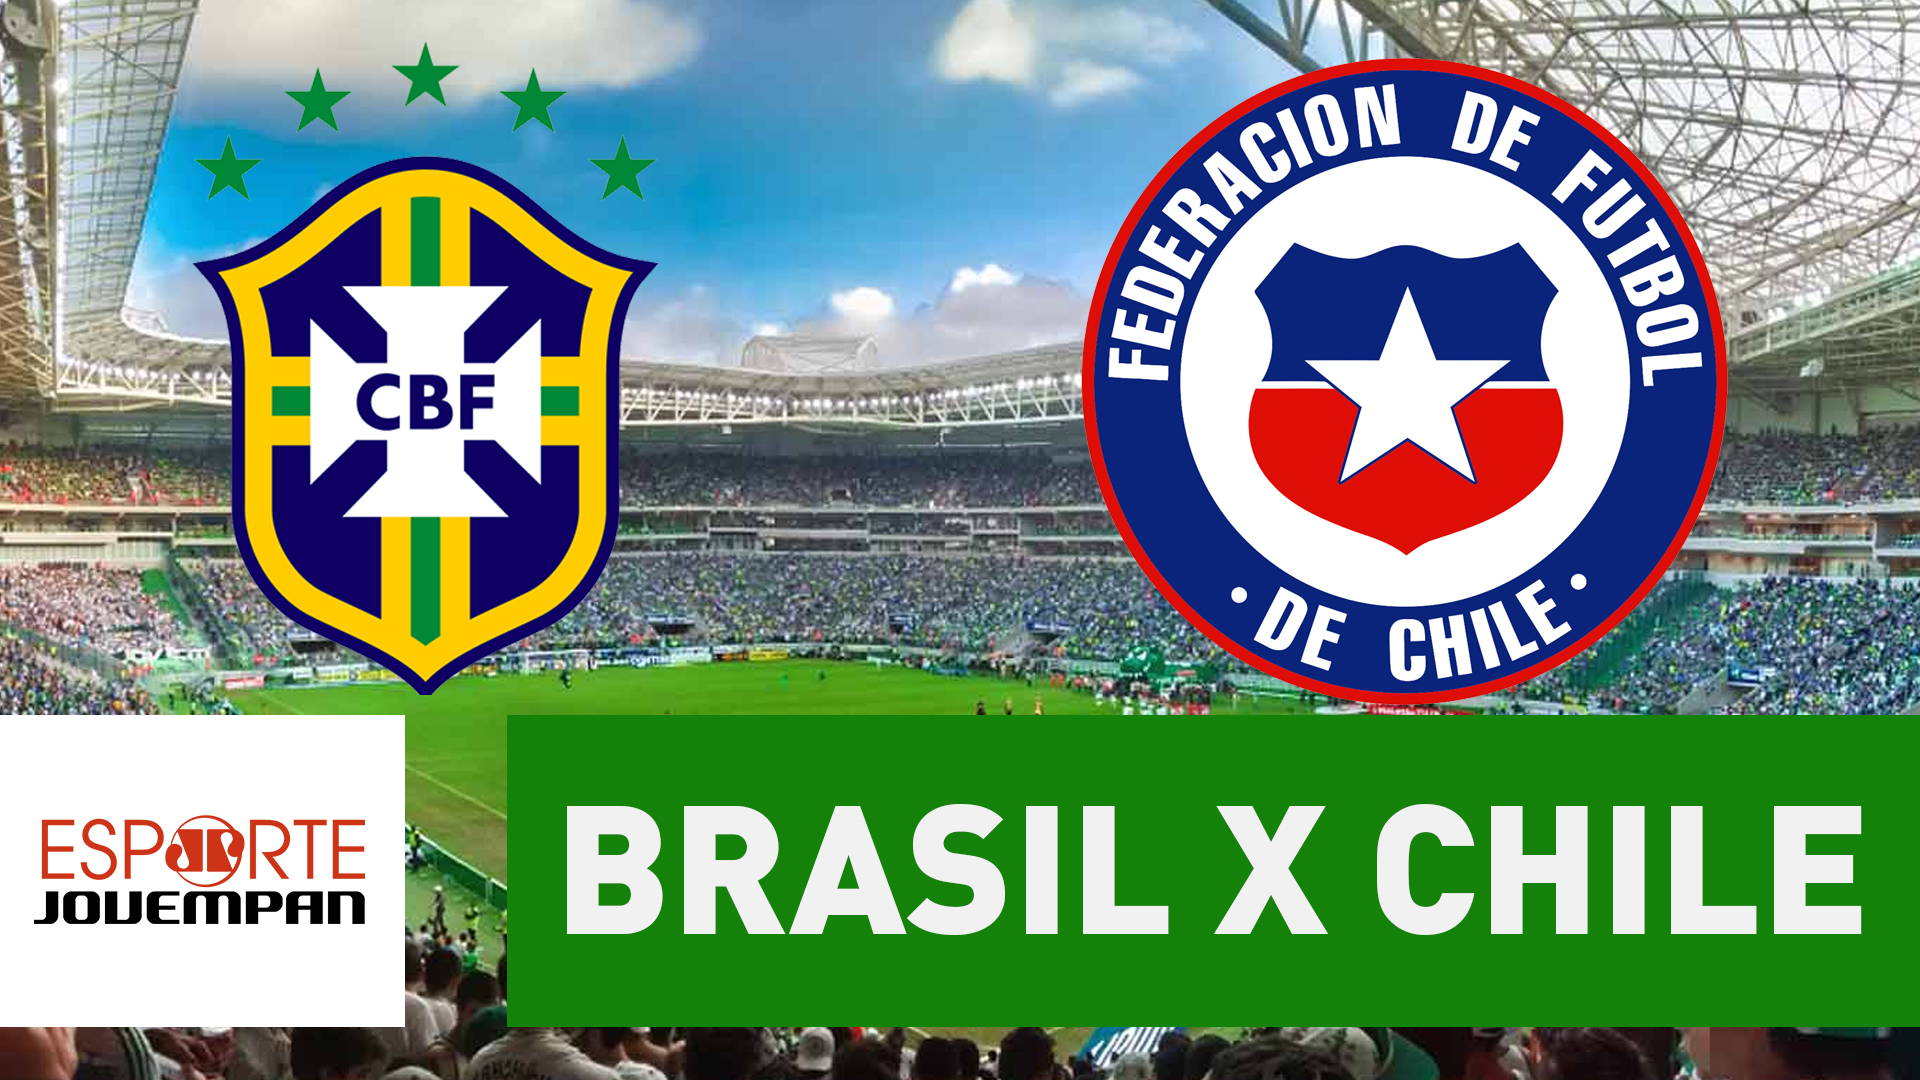 Jovem Pan Transmite Brasil x Chile